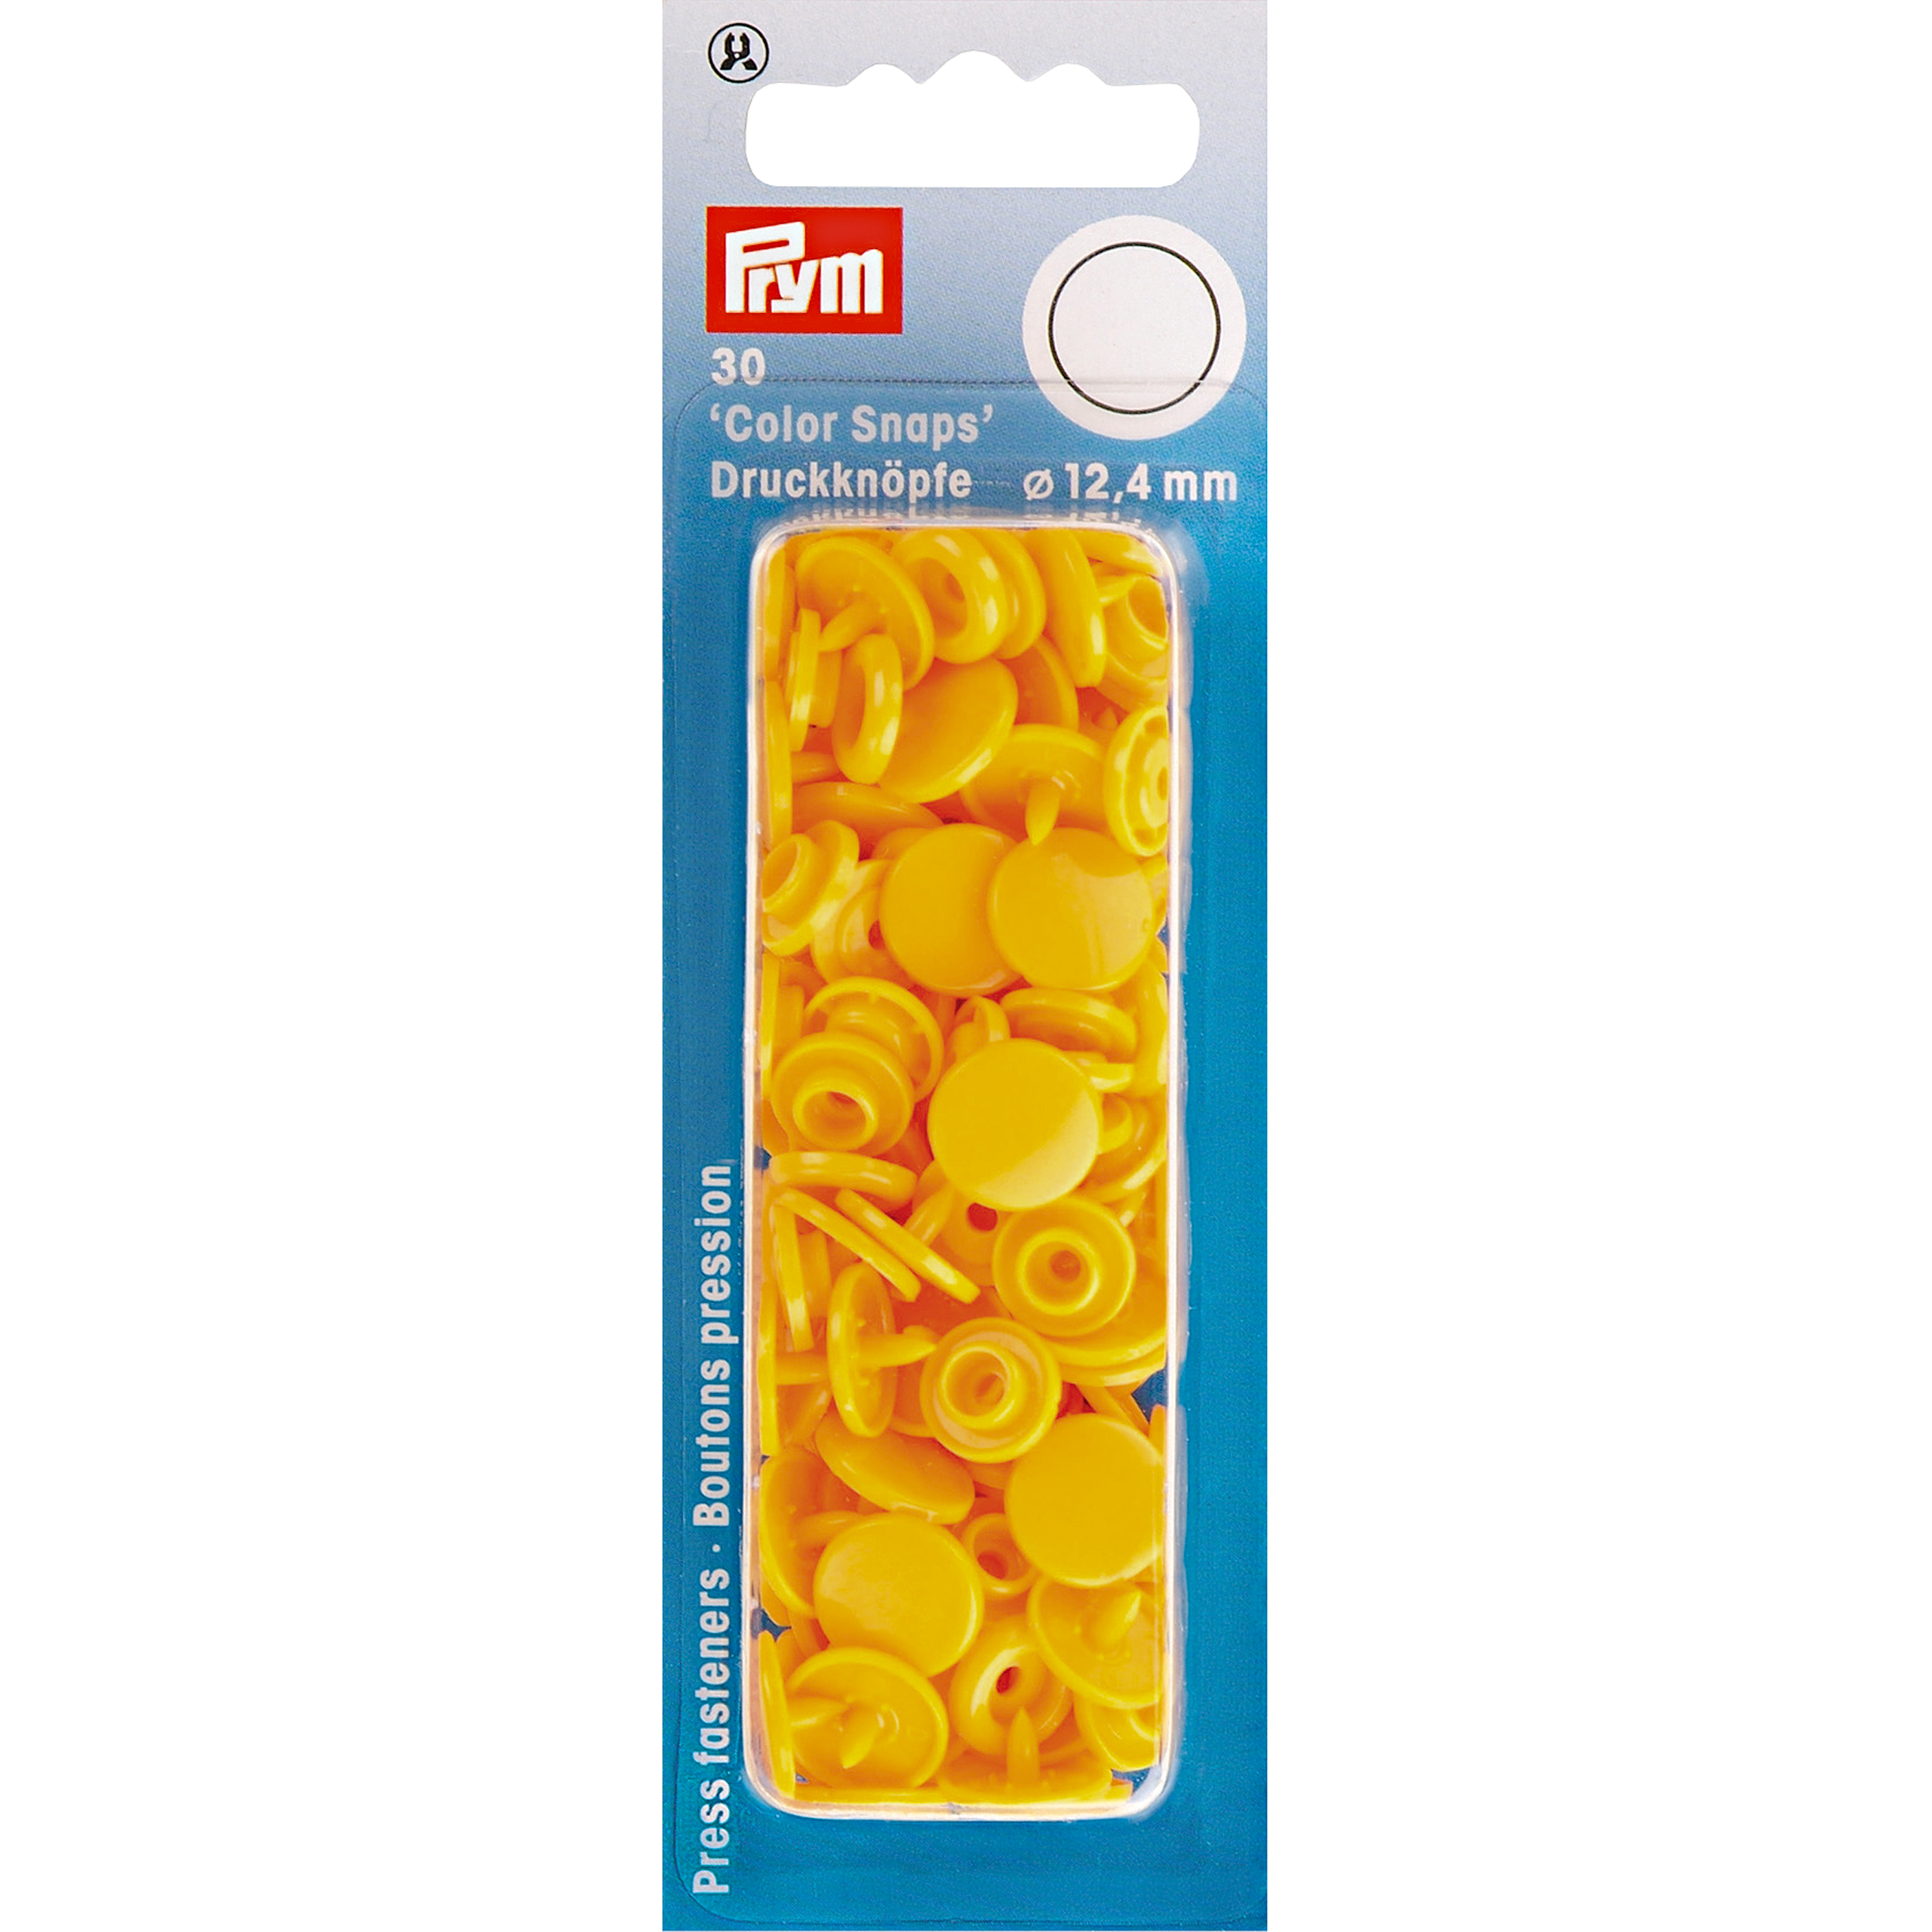 Nähfrei-Druckknöpfe Color Snaps rund 12,4 mm 30 St von Prym gelb